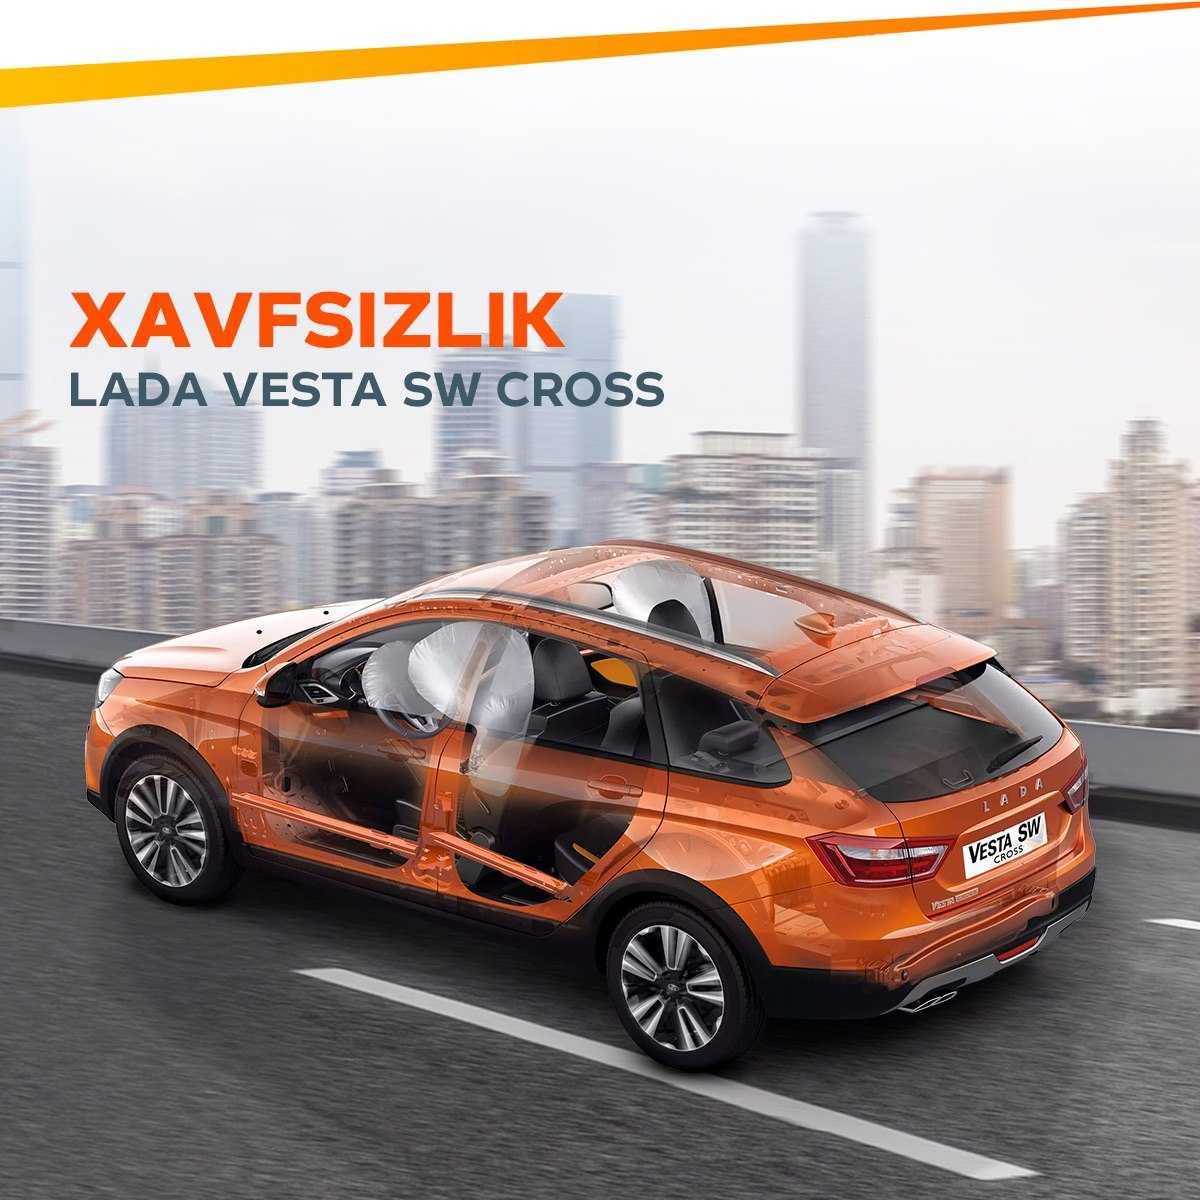 Lada vesta sw cross 1.6 л 16-кл. (106 л.с.), 5мт / comfort / gfk11-51-x67 / черный "маэстро" (653) за 895 900 руб.  – 
                    официальный сайт lada